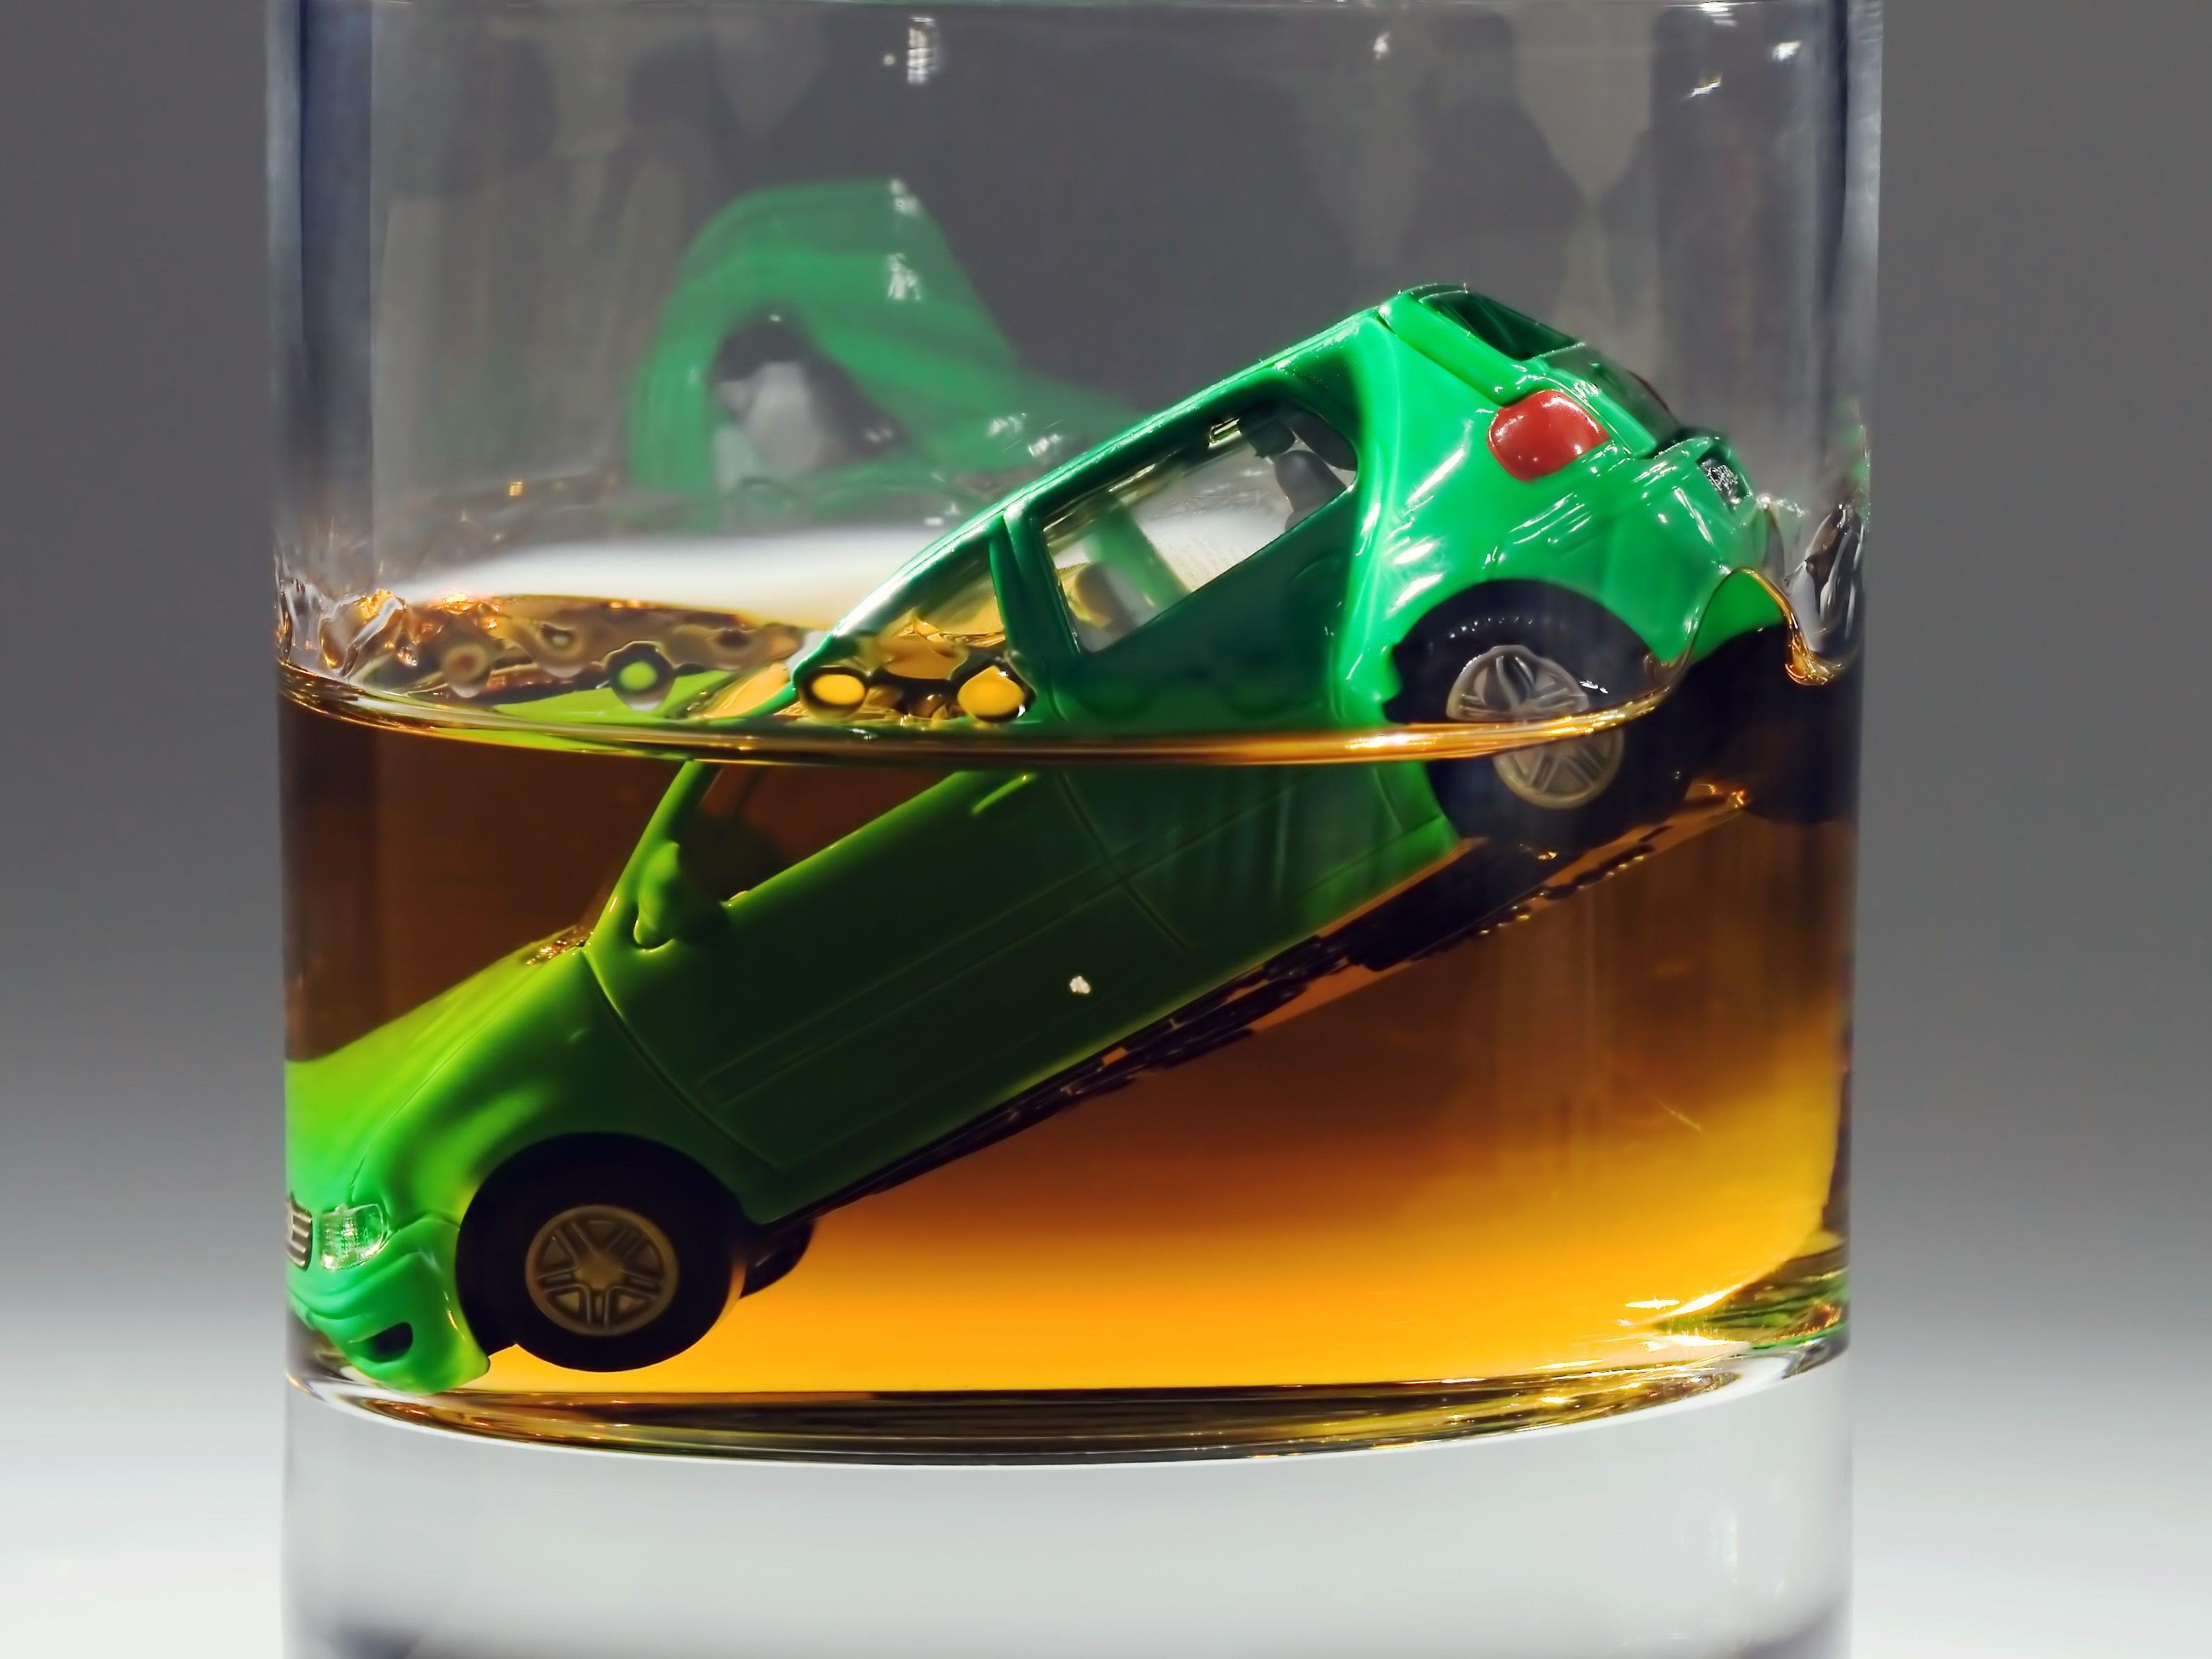 Der Alkoholtest beim Autofahrer verlief positiv.